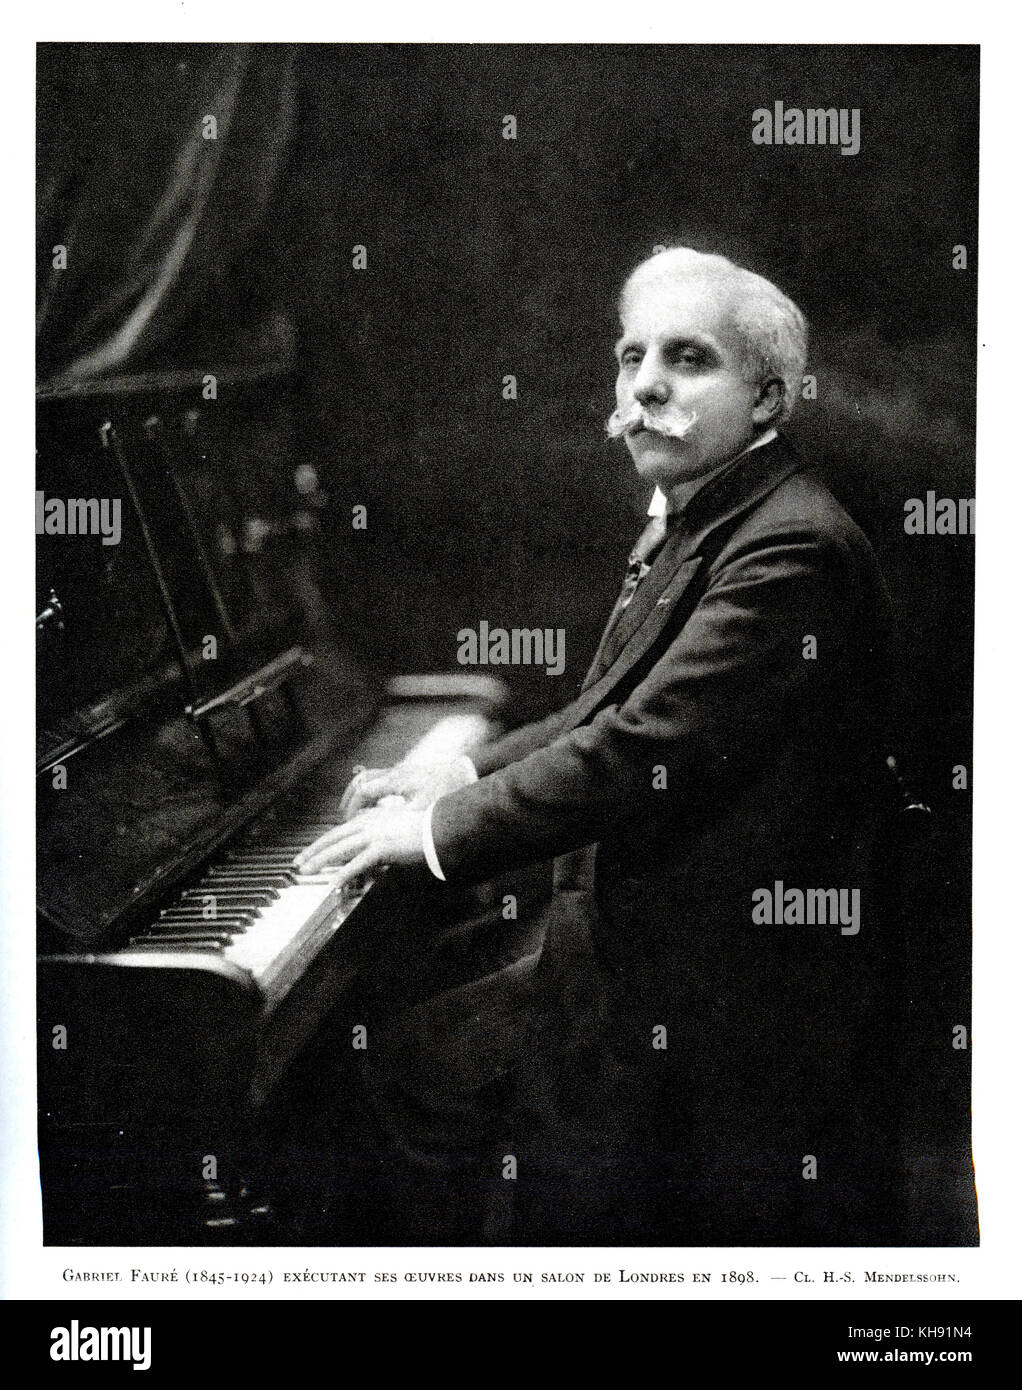 Gabriel Fauré - der französische Komponist Klavier spielen in London 1898. 12. Mai 1845. - 4. November 1924. Stockfoto